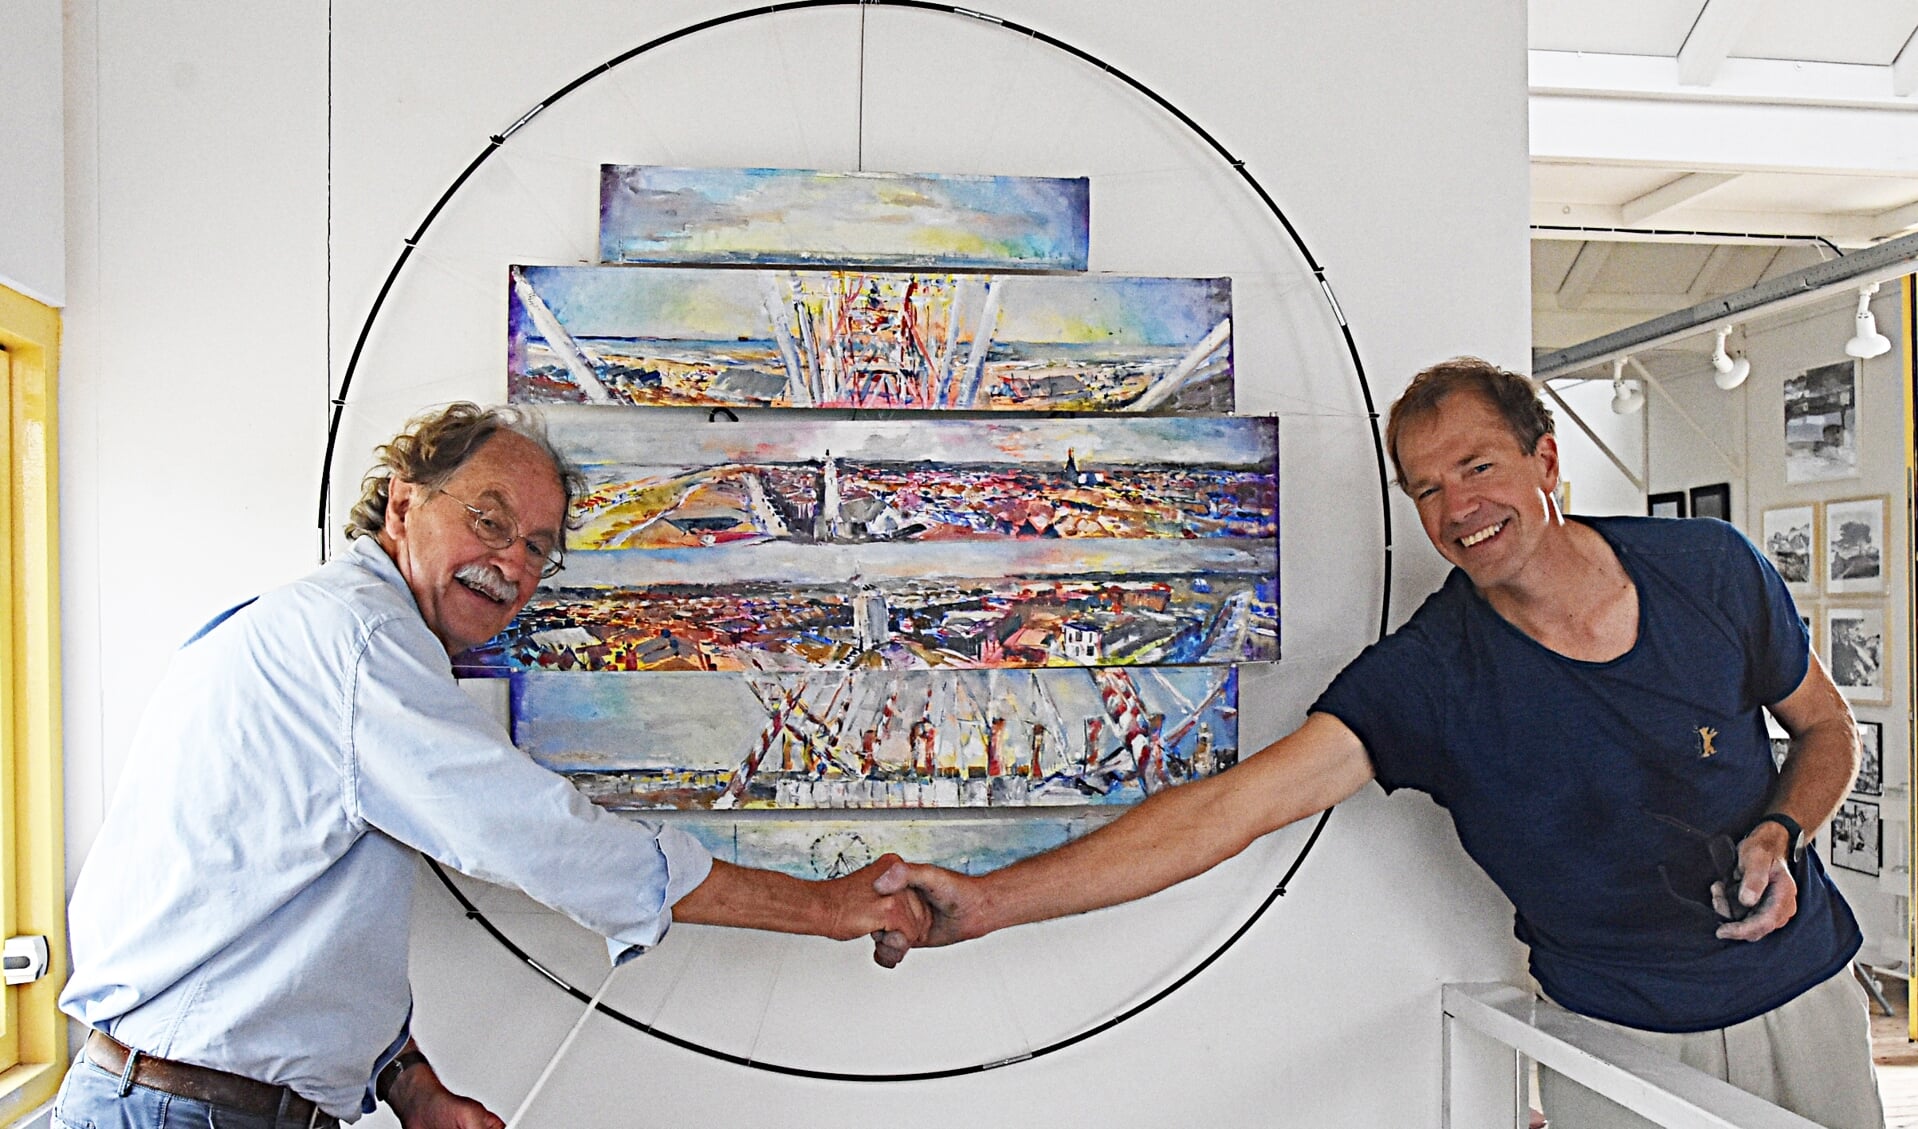 Voorzitter Jack Vlieland en kunstenaar Jacob Kerssemakers bij het resultaat.